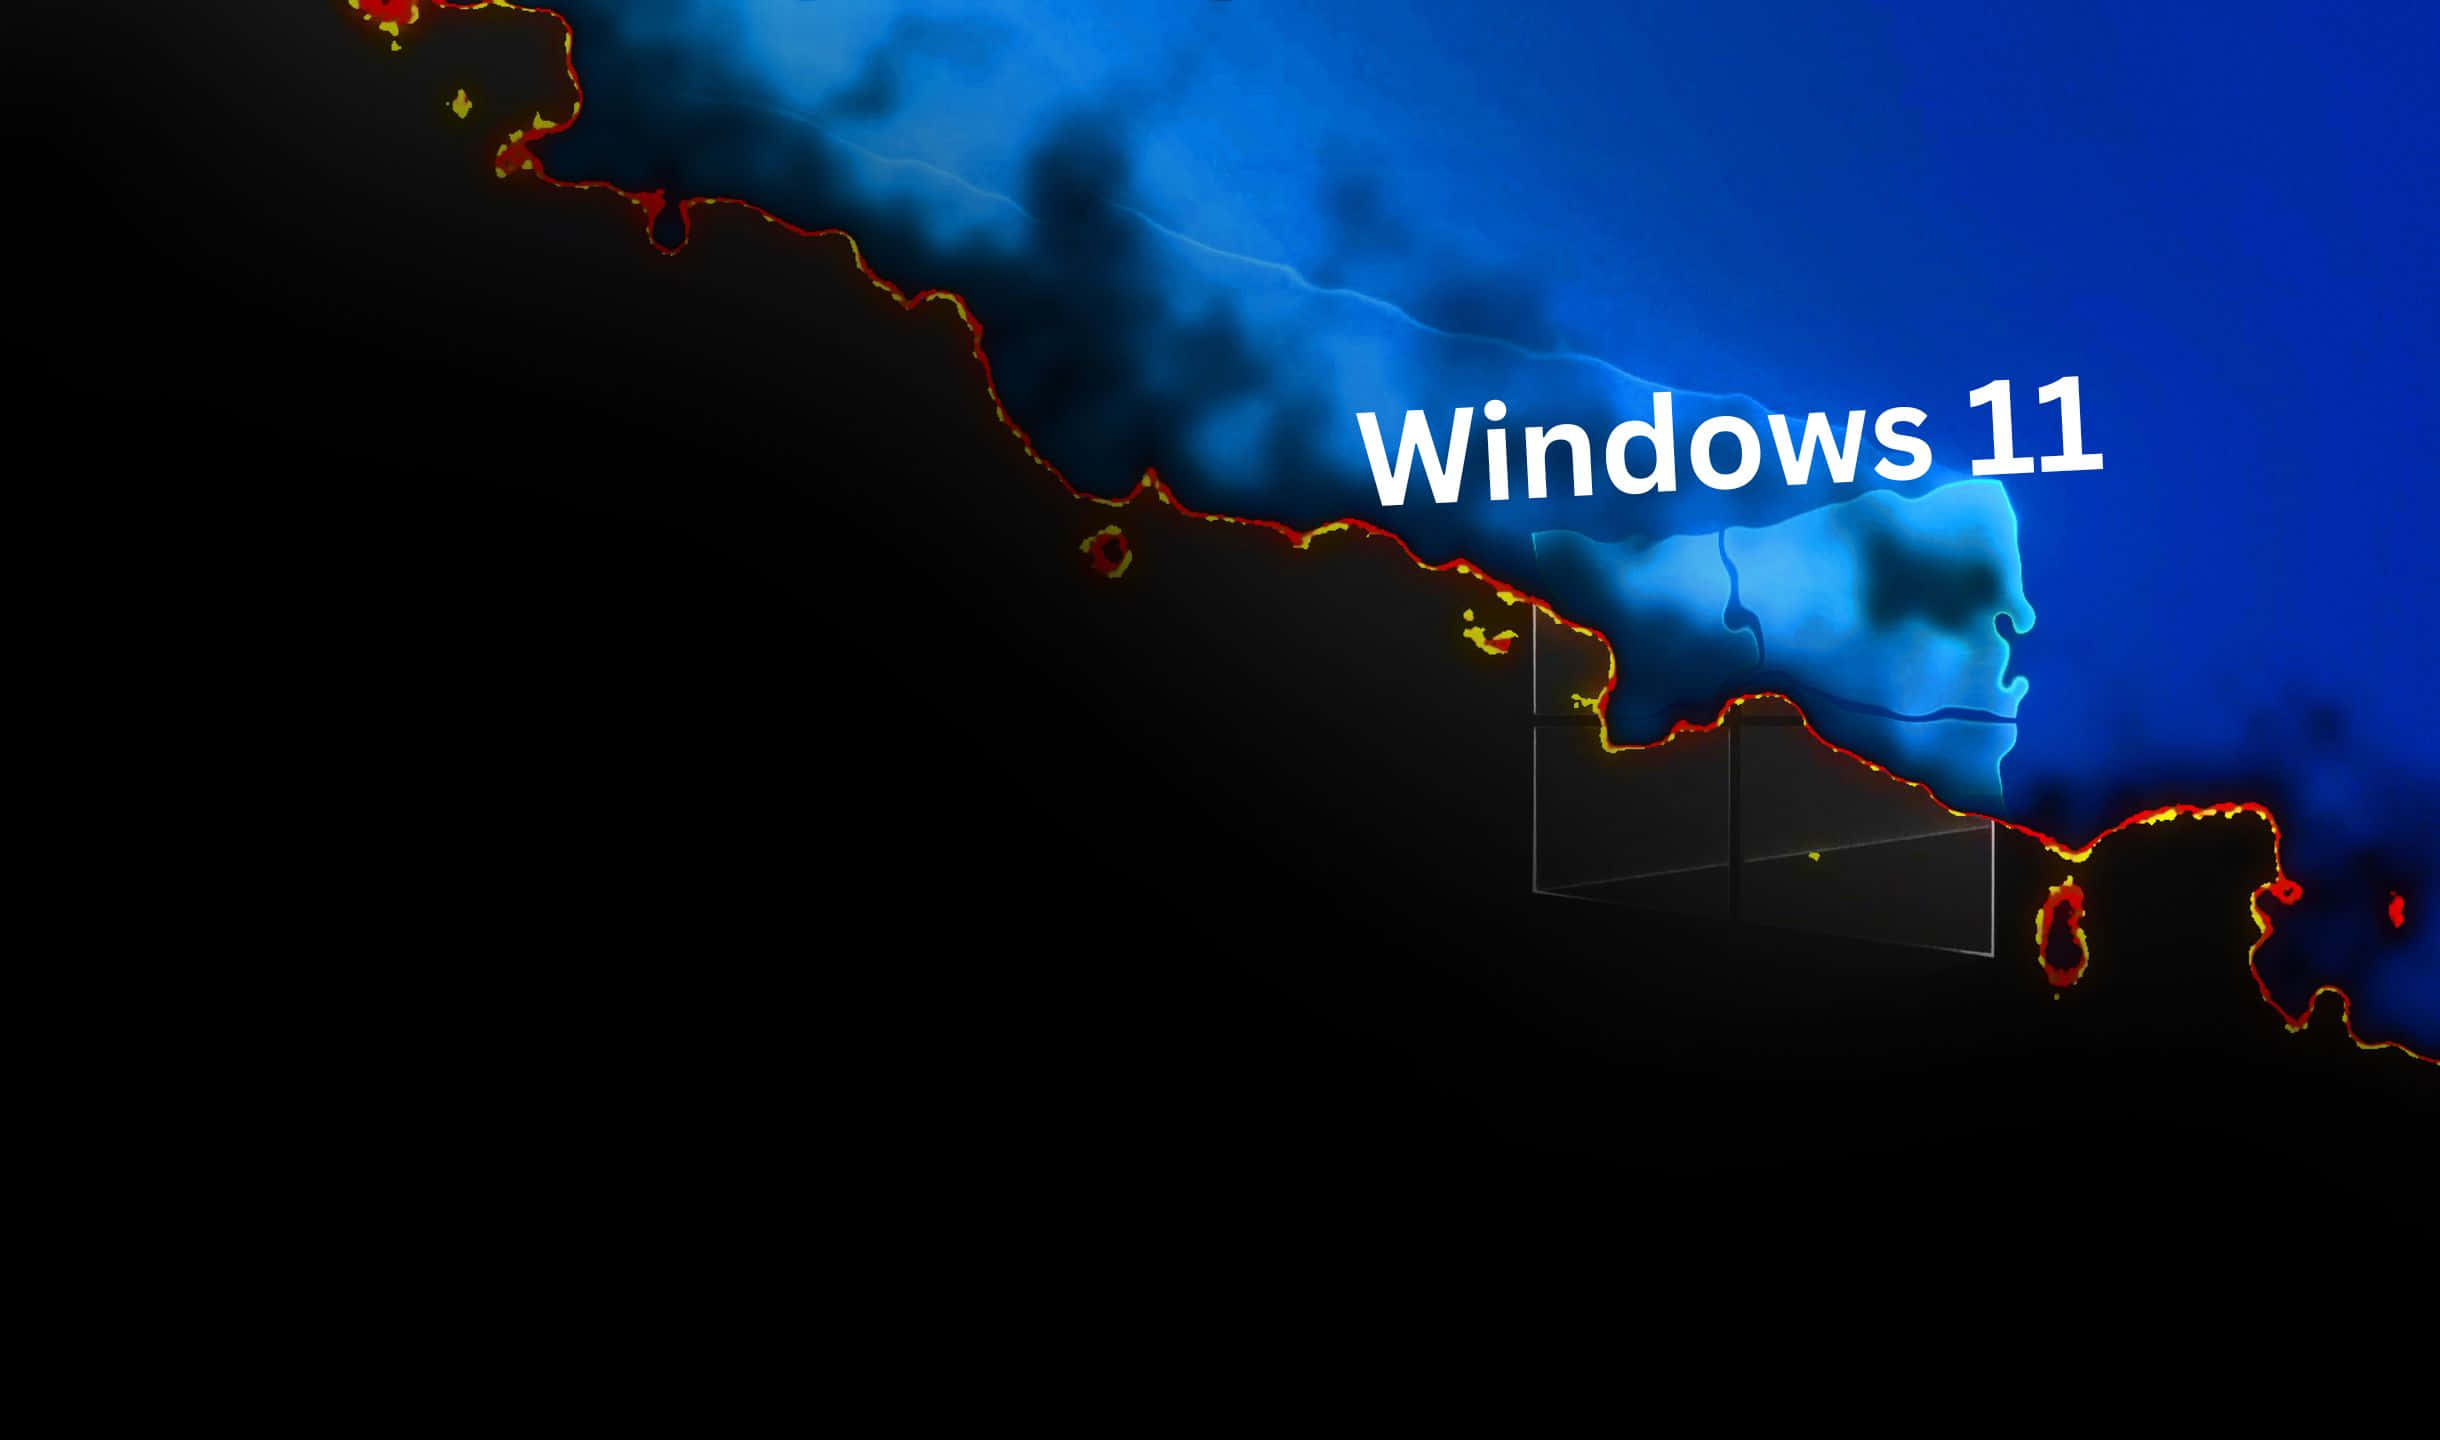 Ladda ner Windows11 Hd-bakgrundsbilder | Wallpapers.com